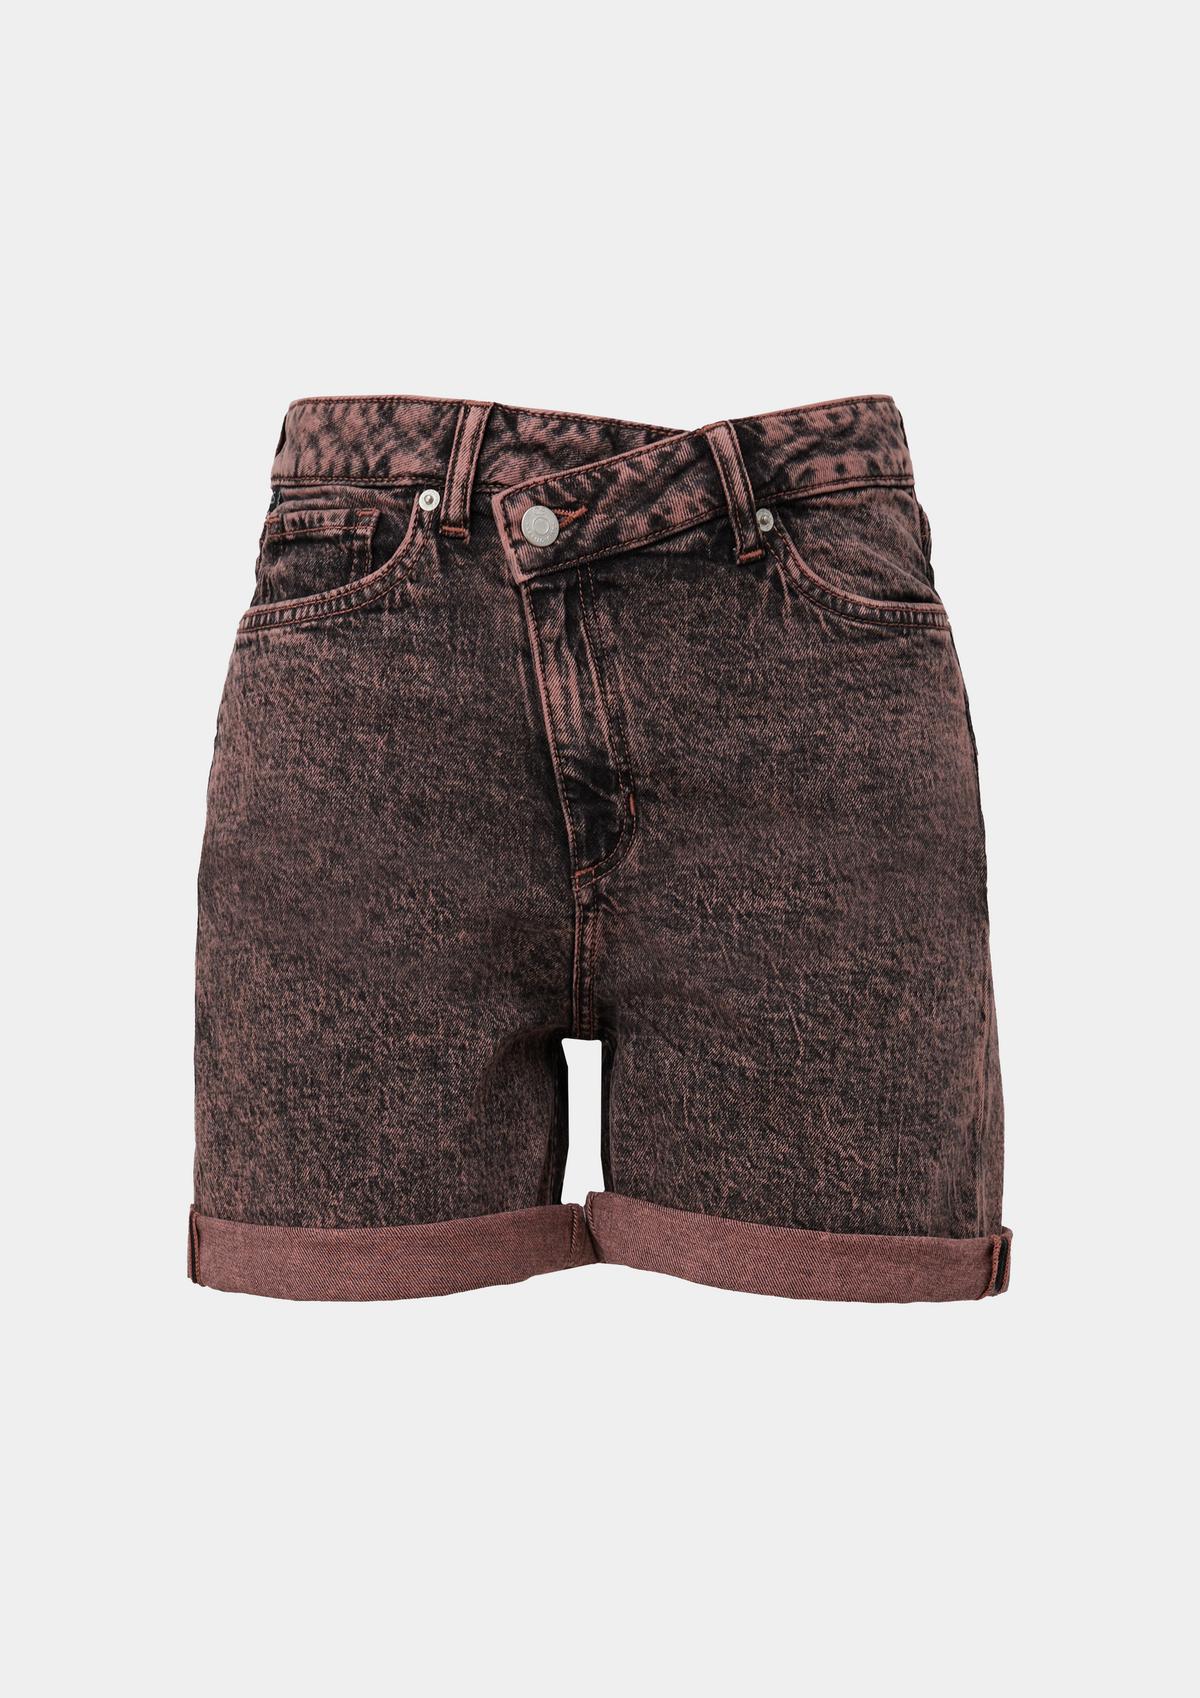 s.Oliver Mom fit: denim shorts with offset belt loops